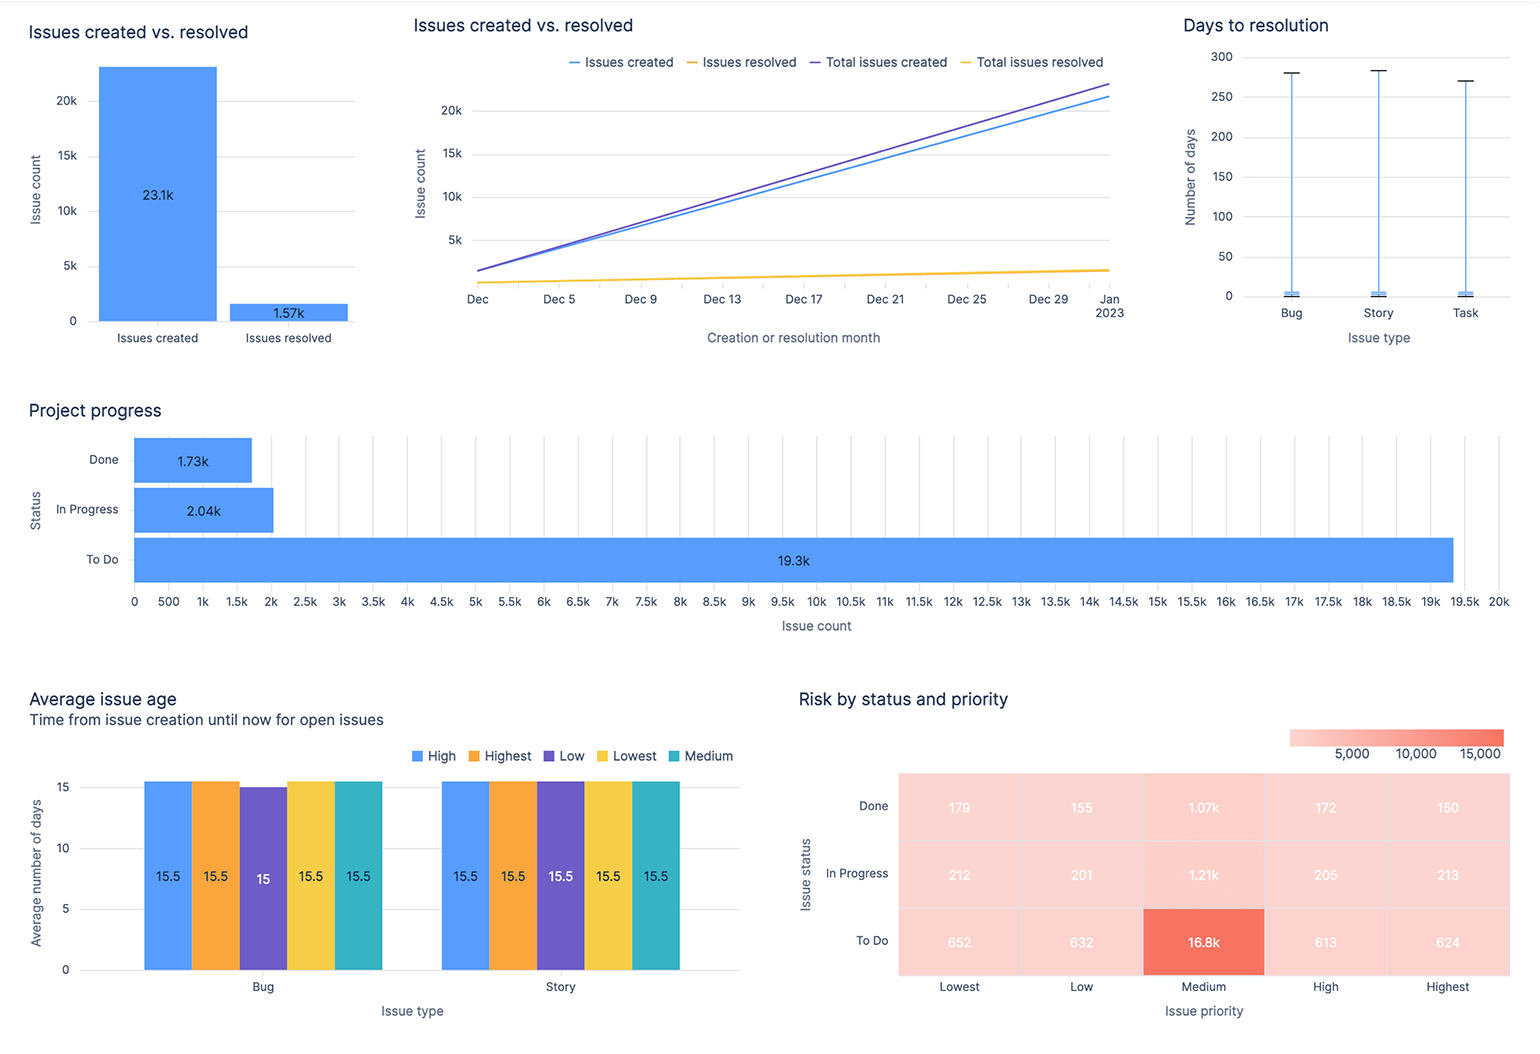 На дашбоарде с обзором проекта Jira в Atlassian Analytics представлены диаграммы, с помощью которых команды DevOps отслеживают созданные и решенные задачи, прогресс проекта, среднюю давность создания задач, а также риск с разбивкой по статусу и приоритету.